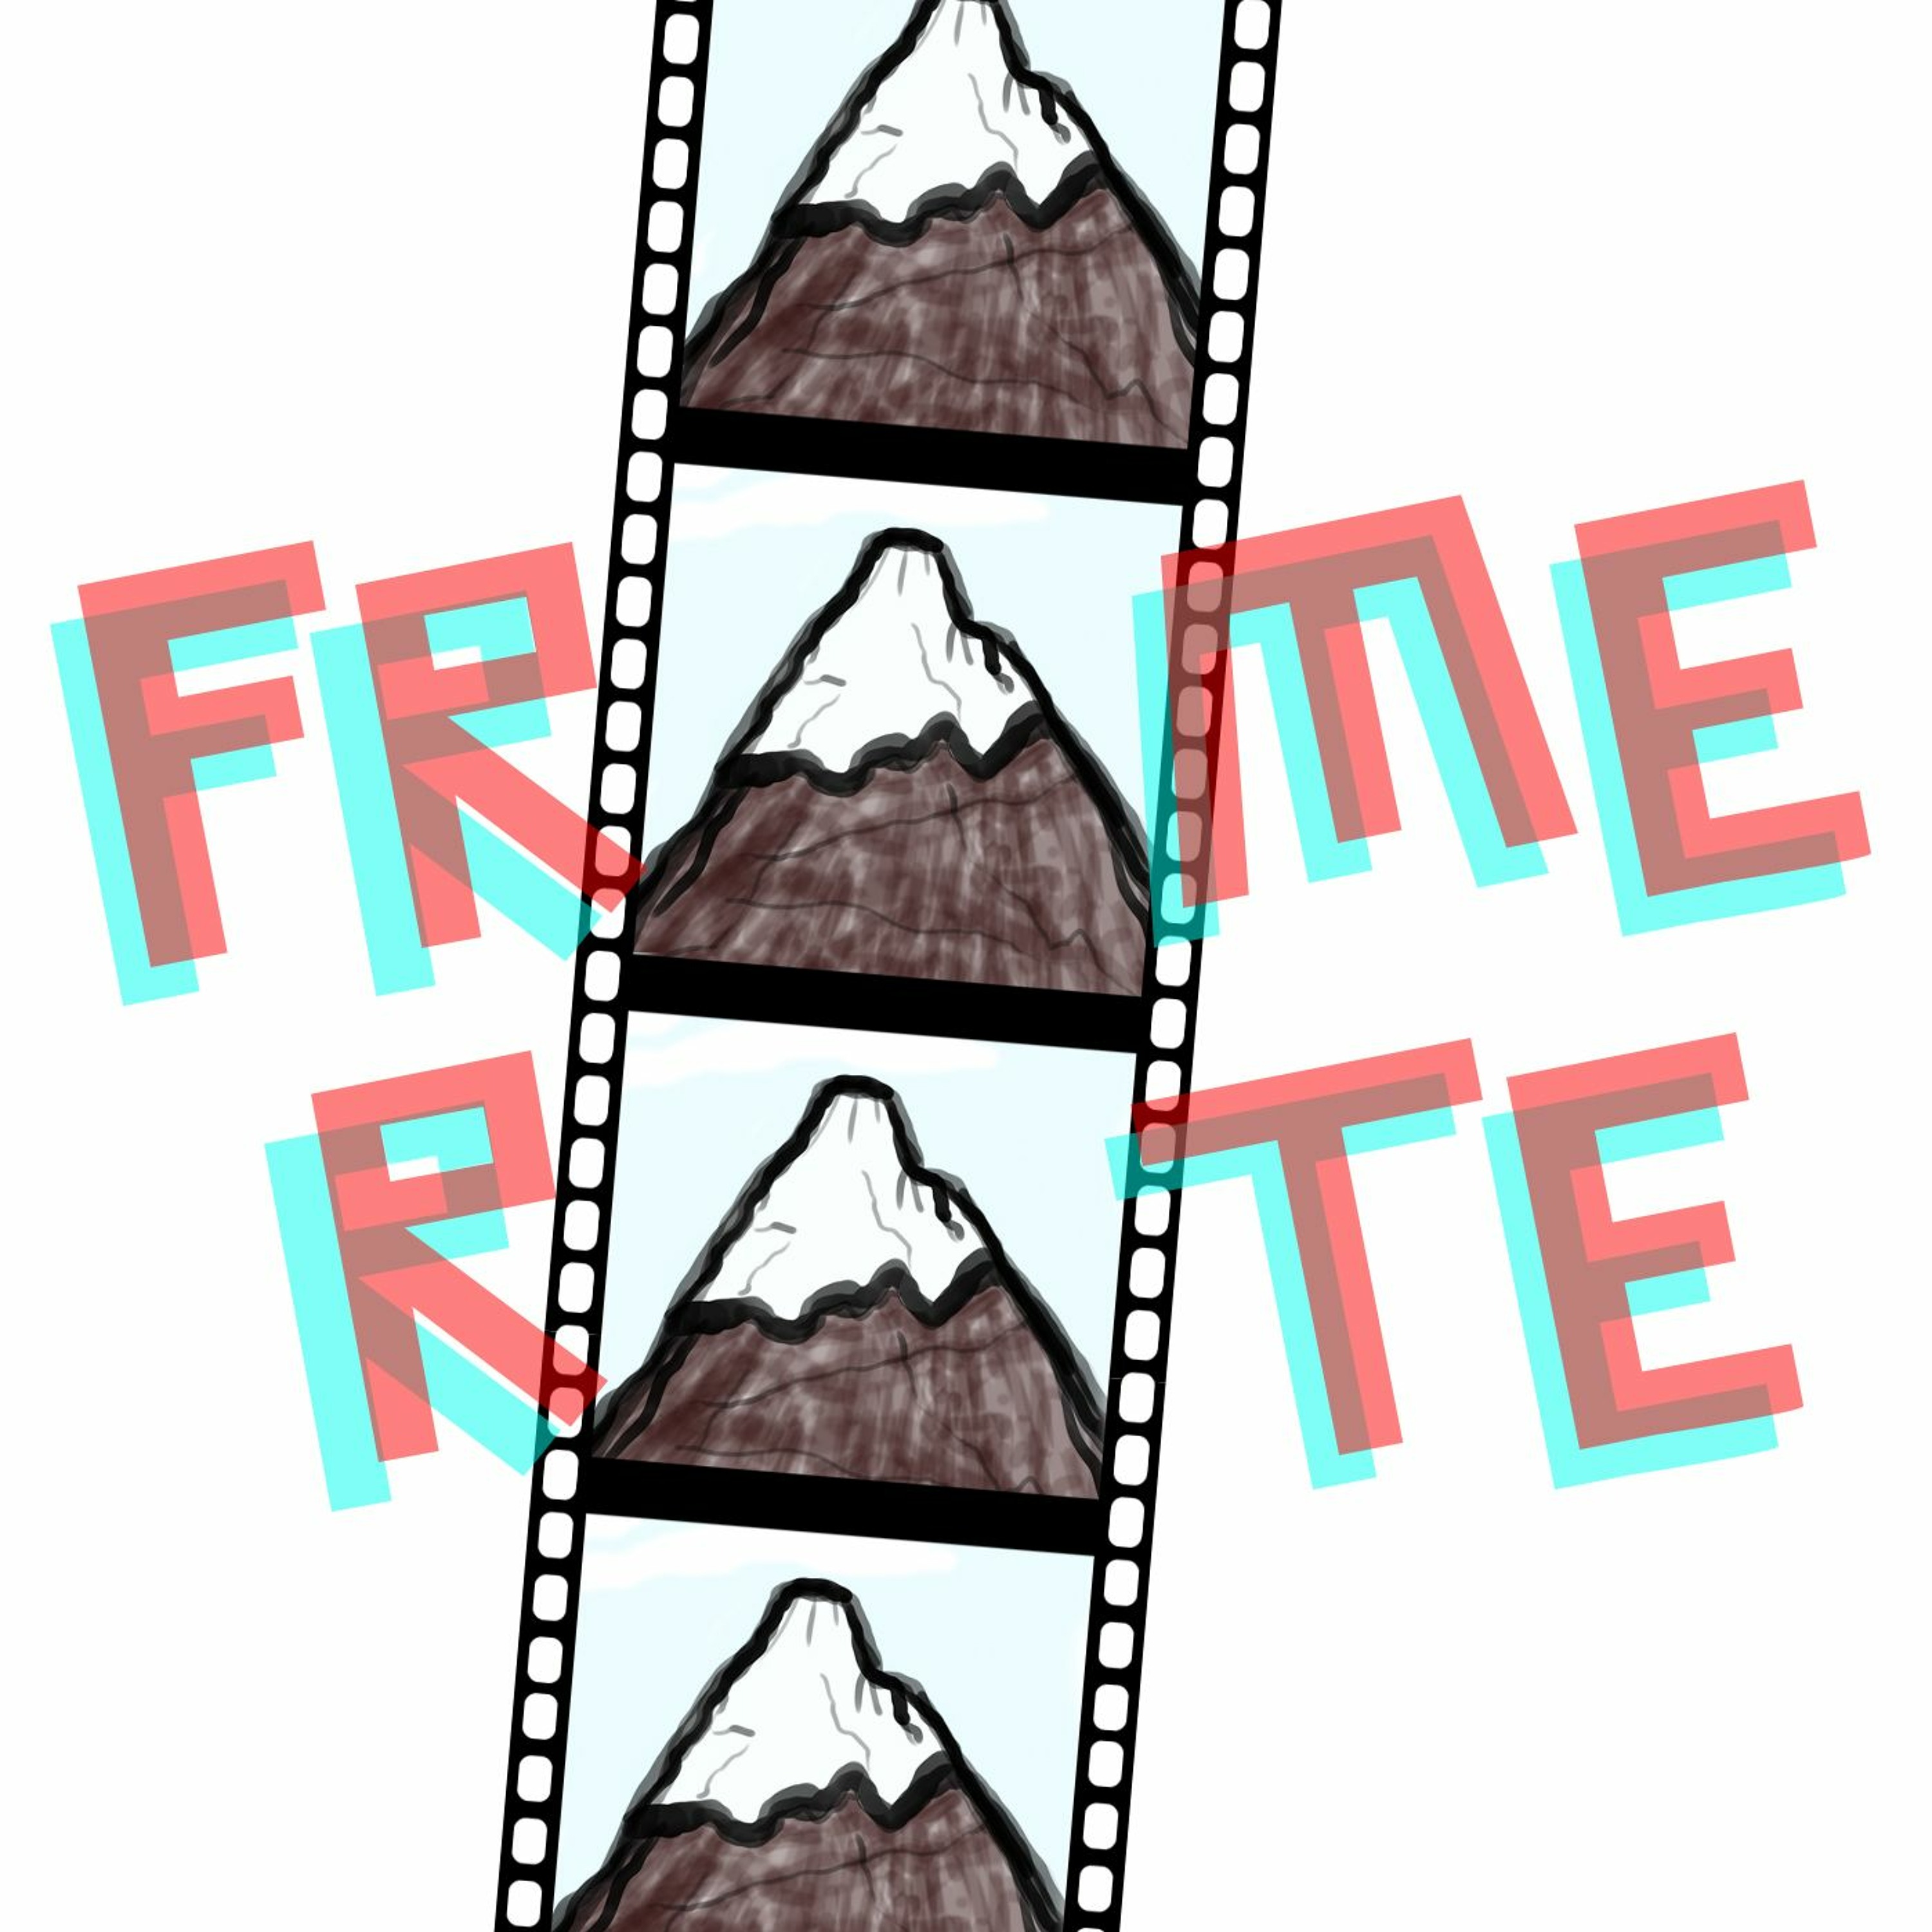 283. Frame Rate: Clue (Feat. Daniel O’Brien)